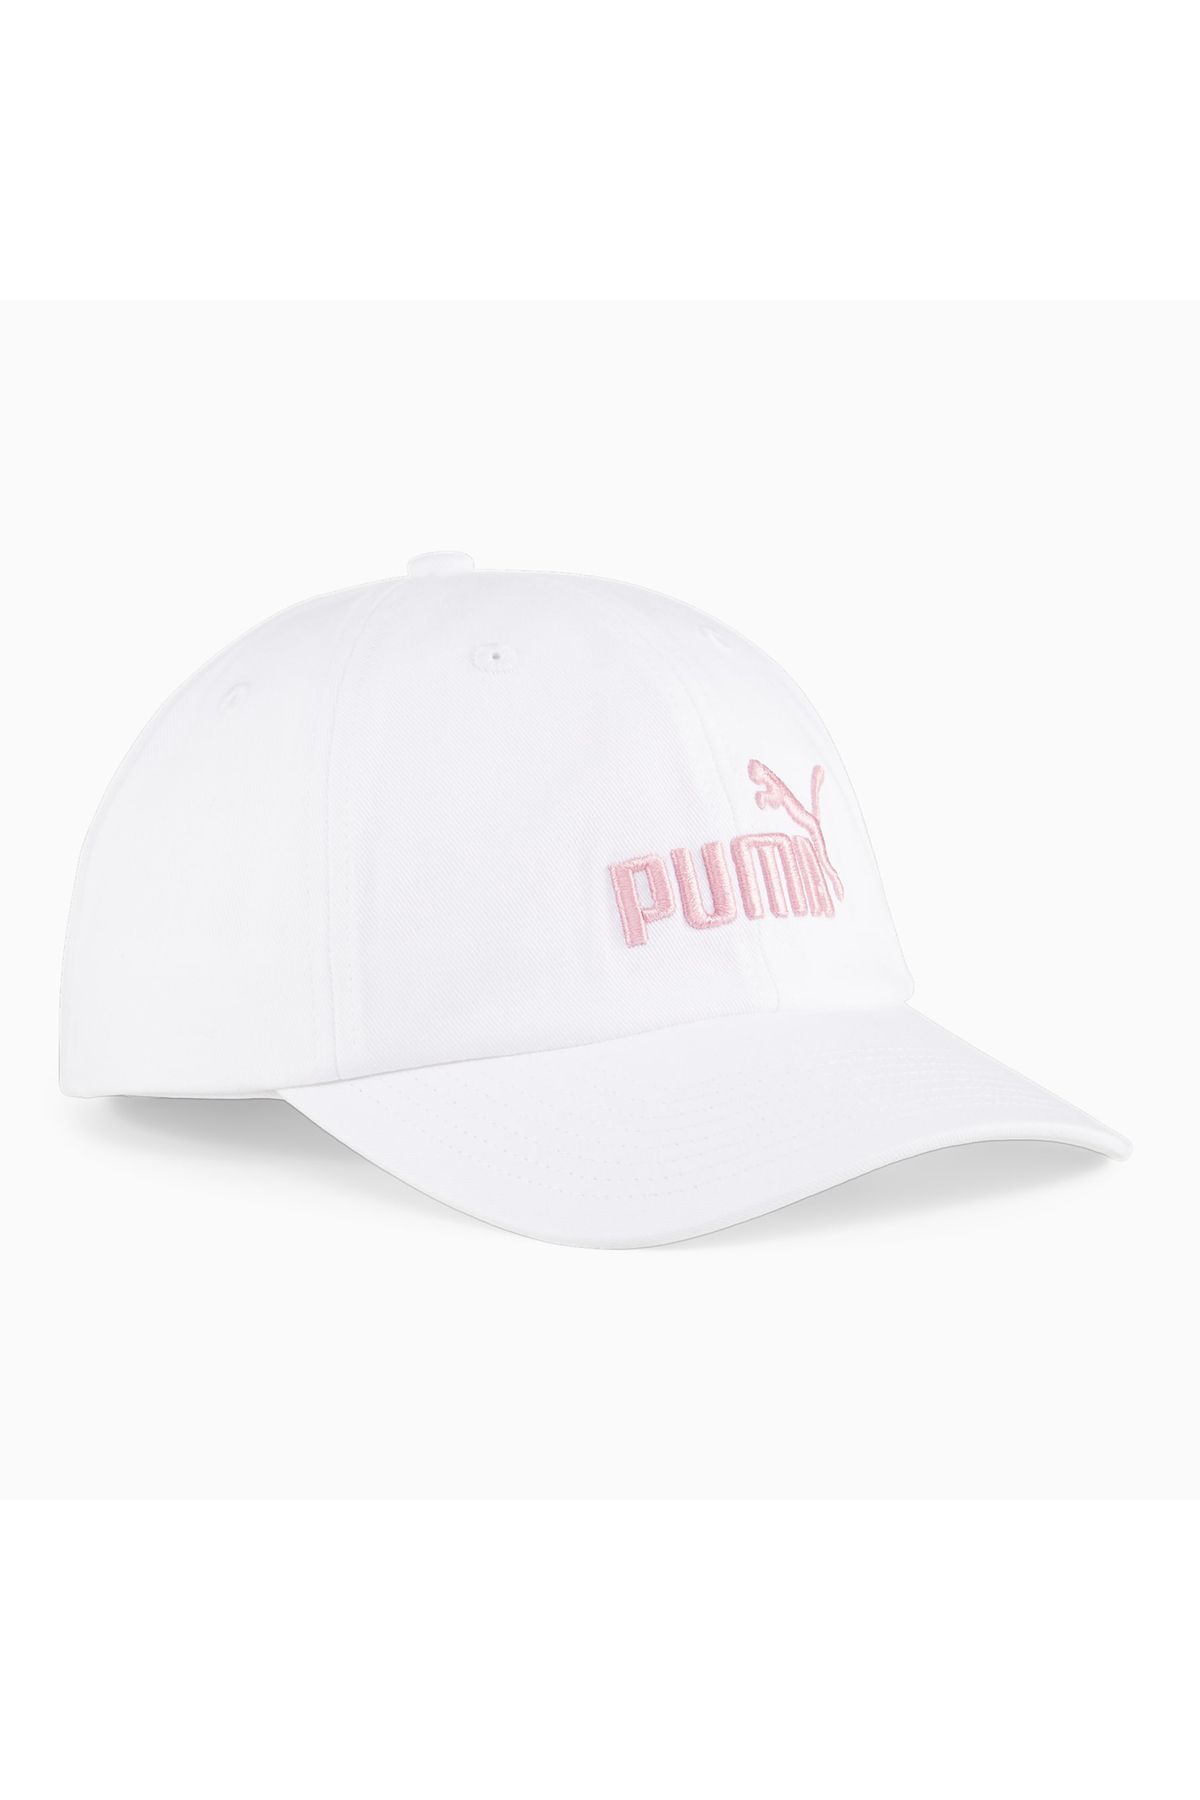 Puma Essentials Kadın Beyaz Şapka (024357-16)